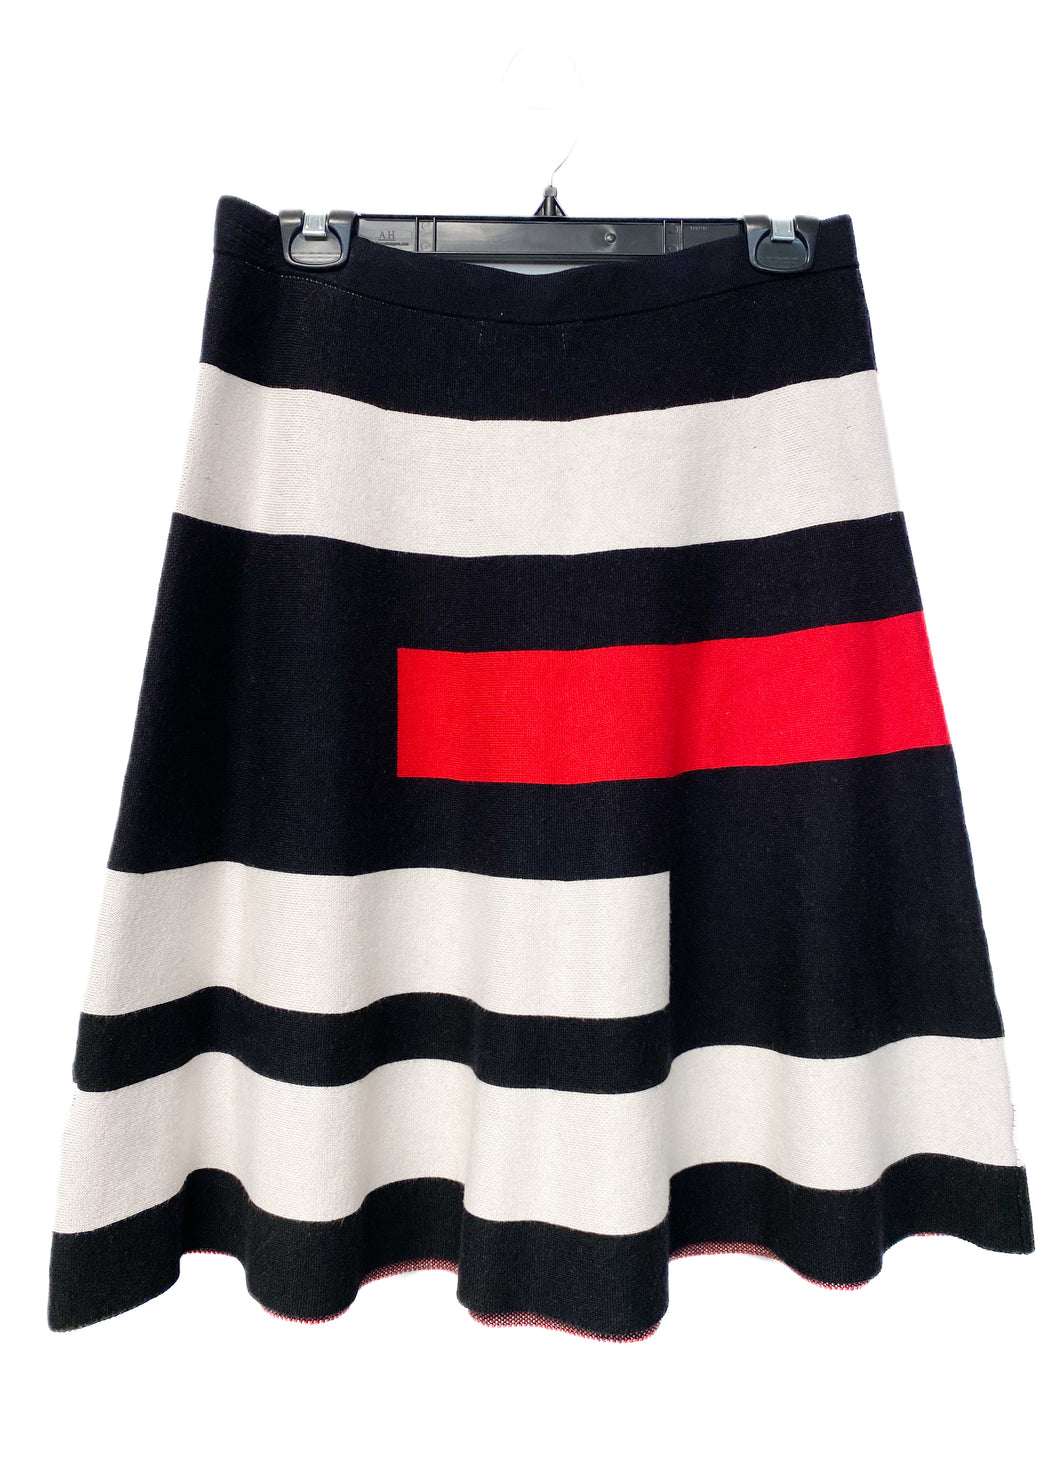 Spense Skirt (M)